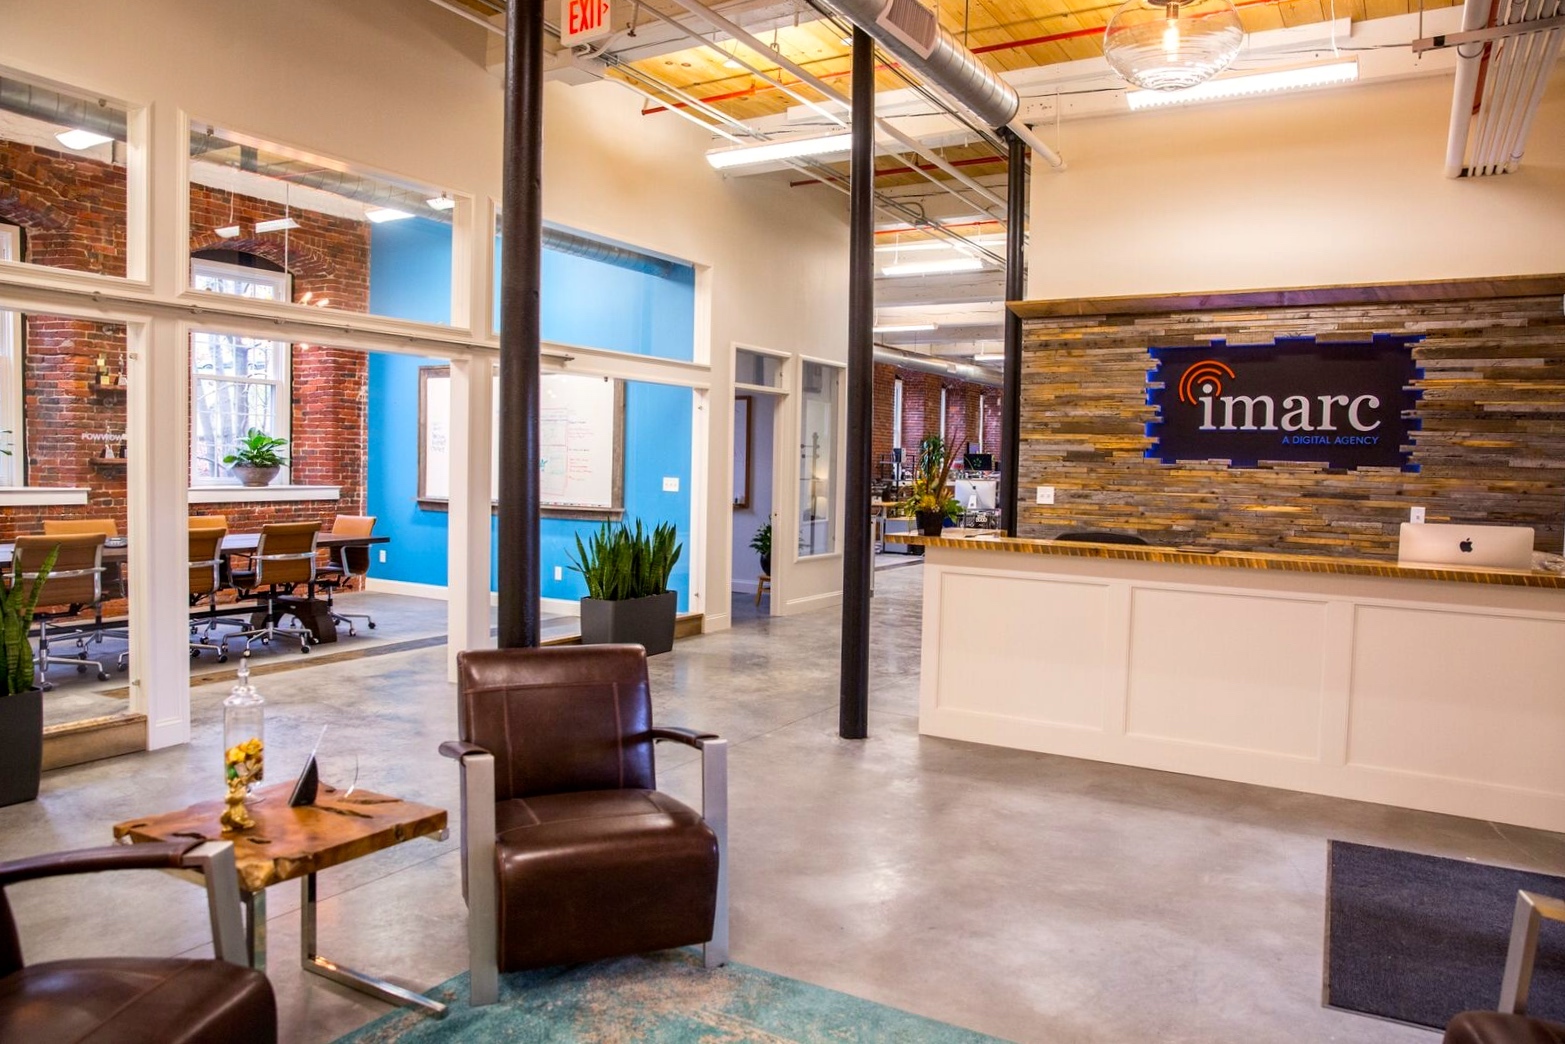 Imarc, a digital agency